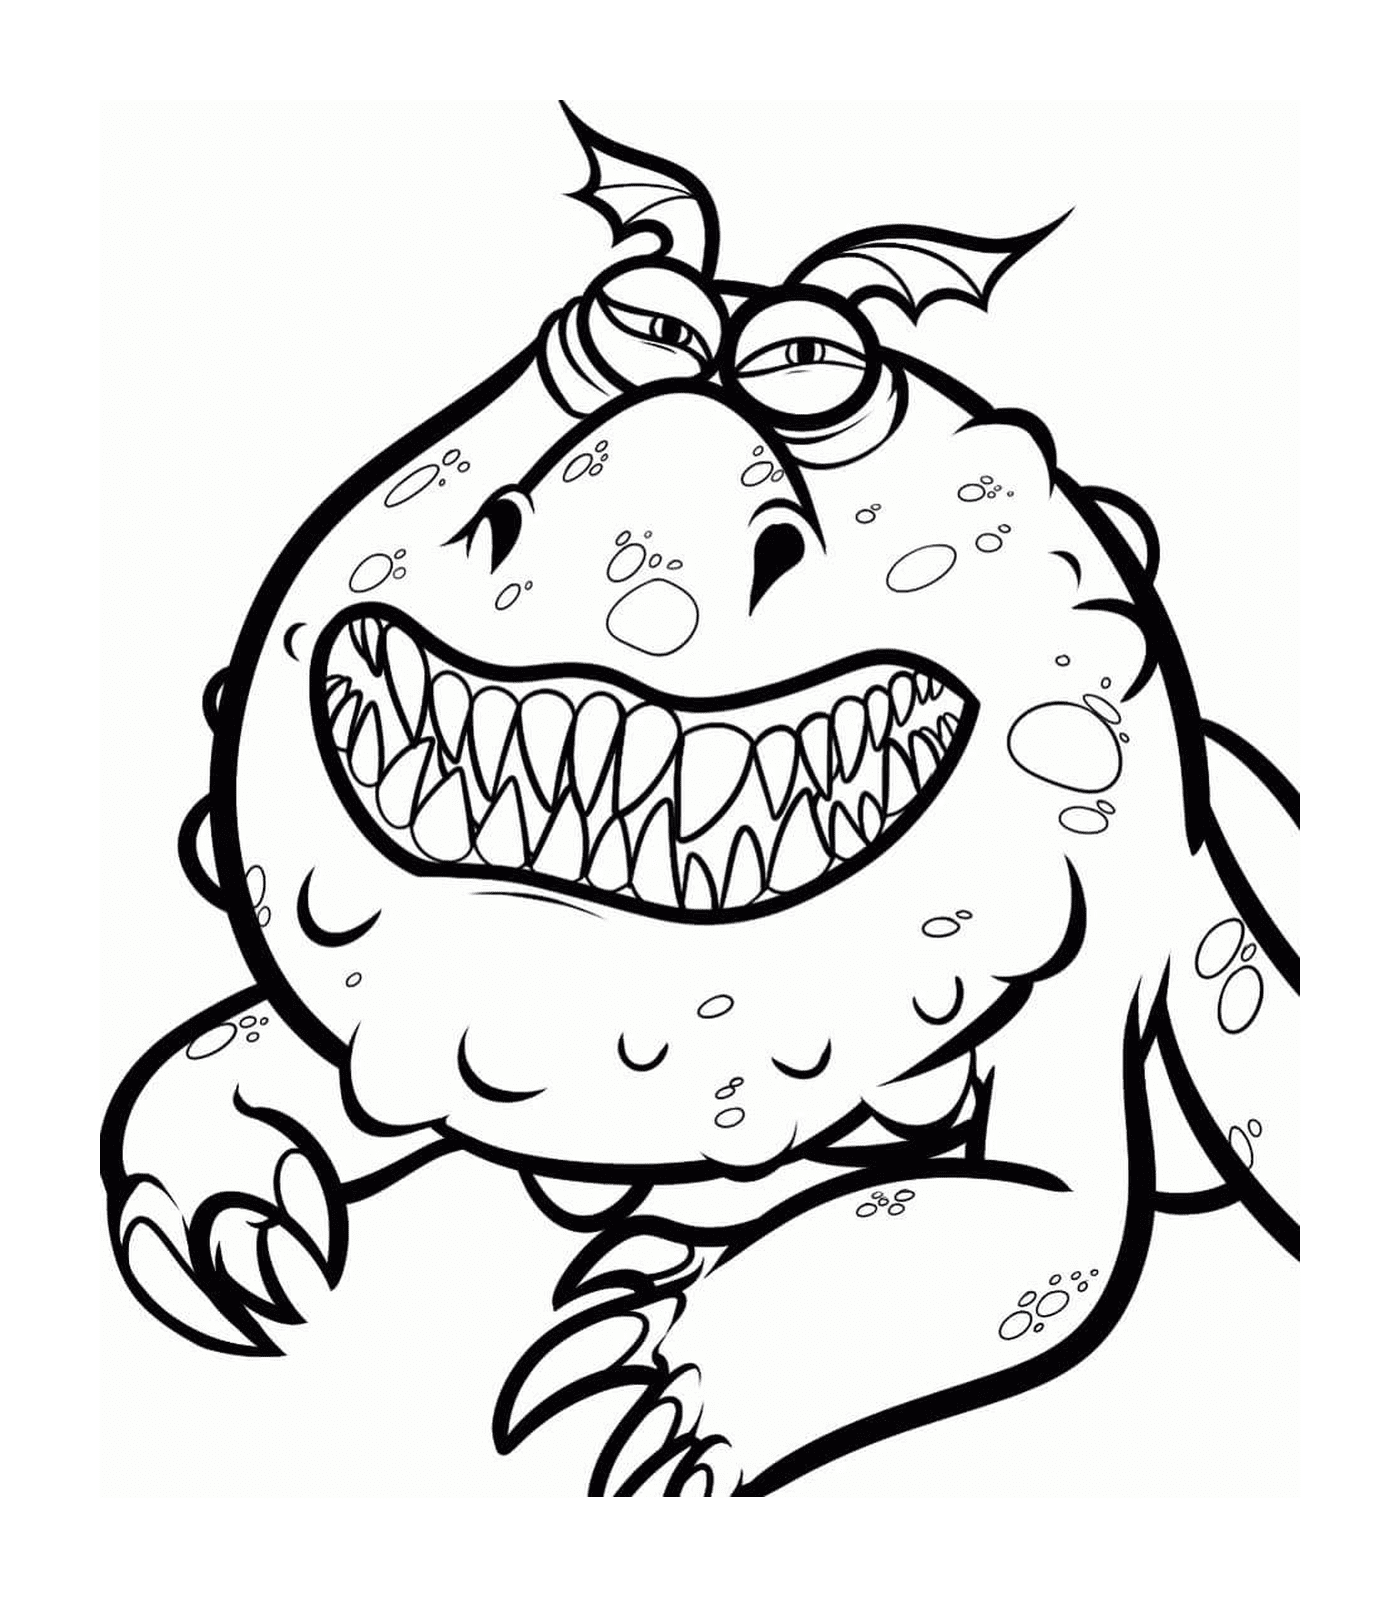  Meatlug, um monstro com um grande sorriso 